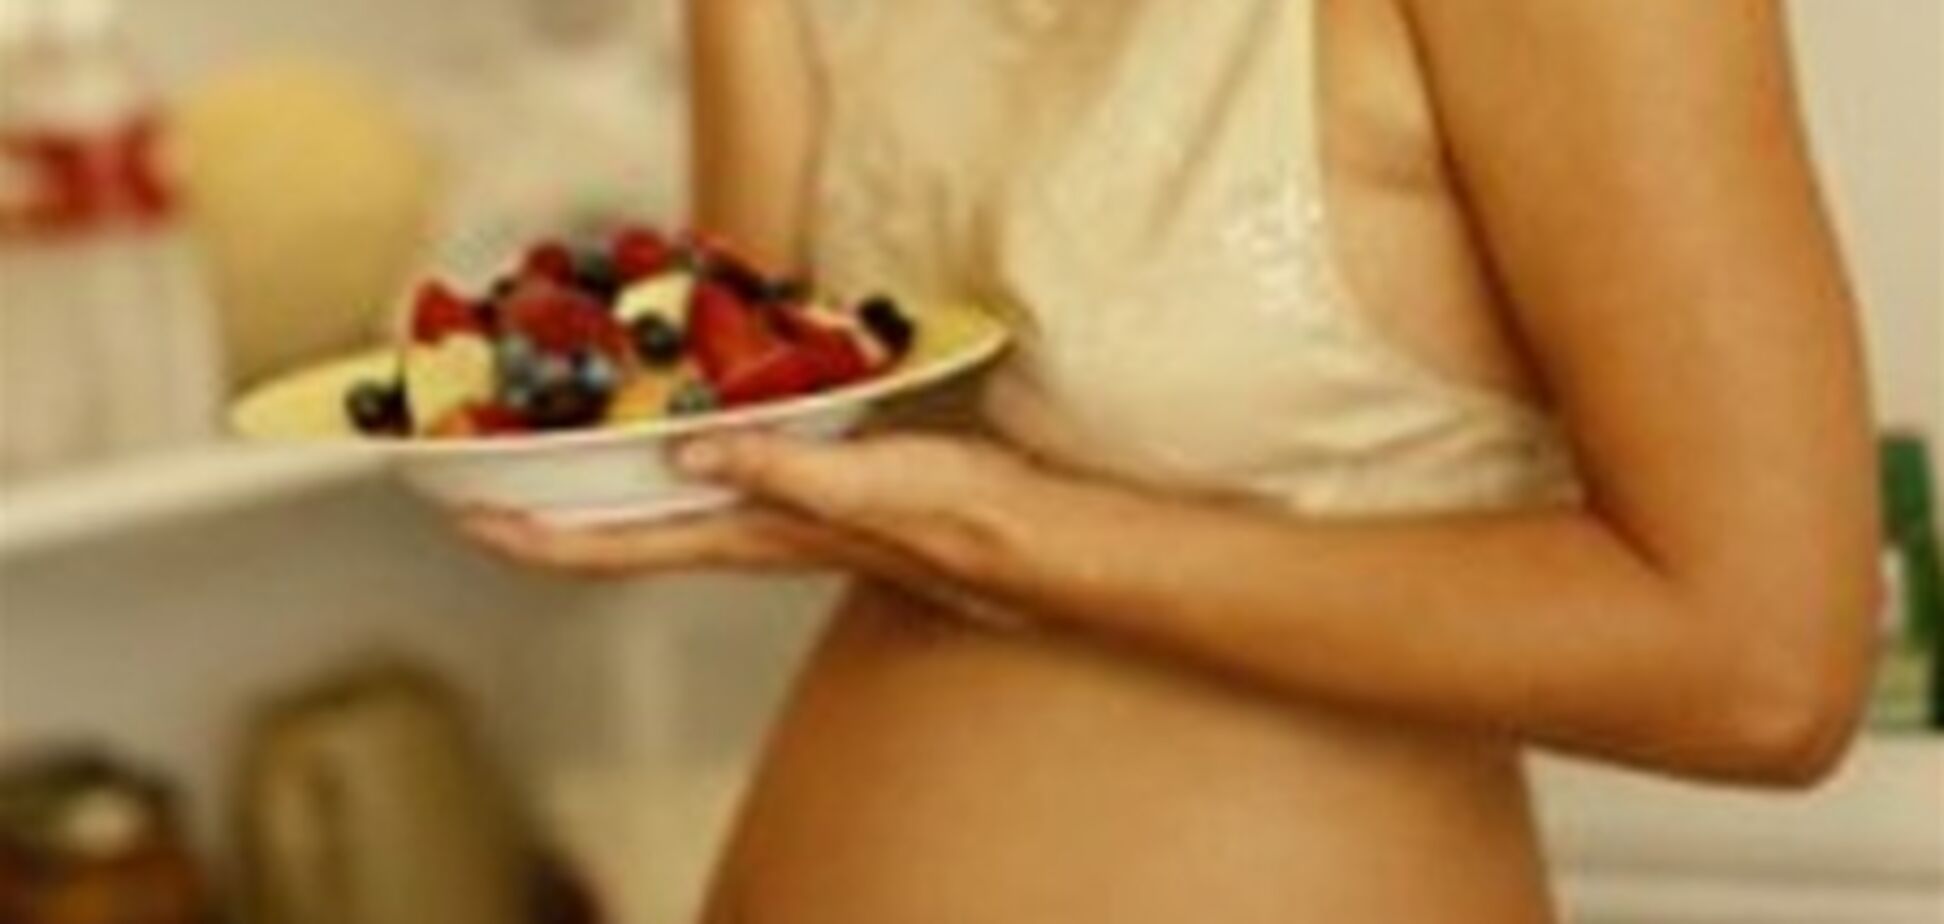 Хотите родить здоровую дочку? Ешьте меньше сахара!